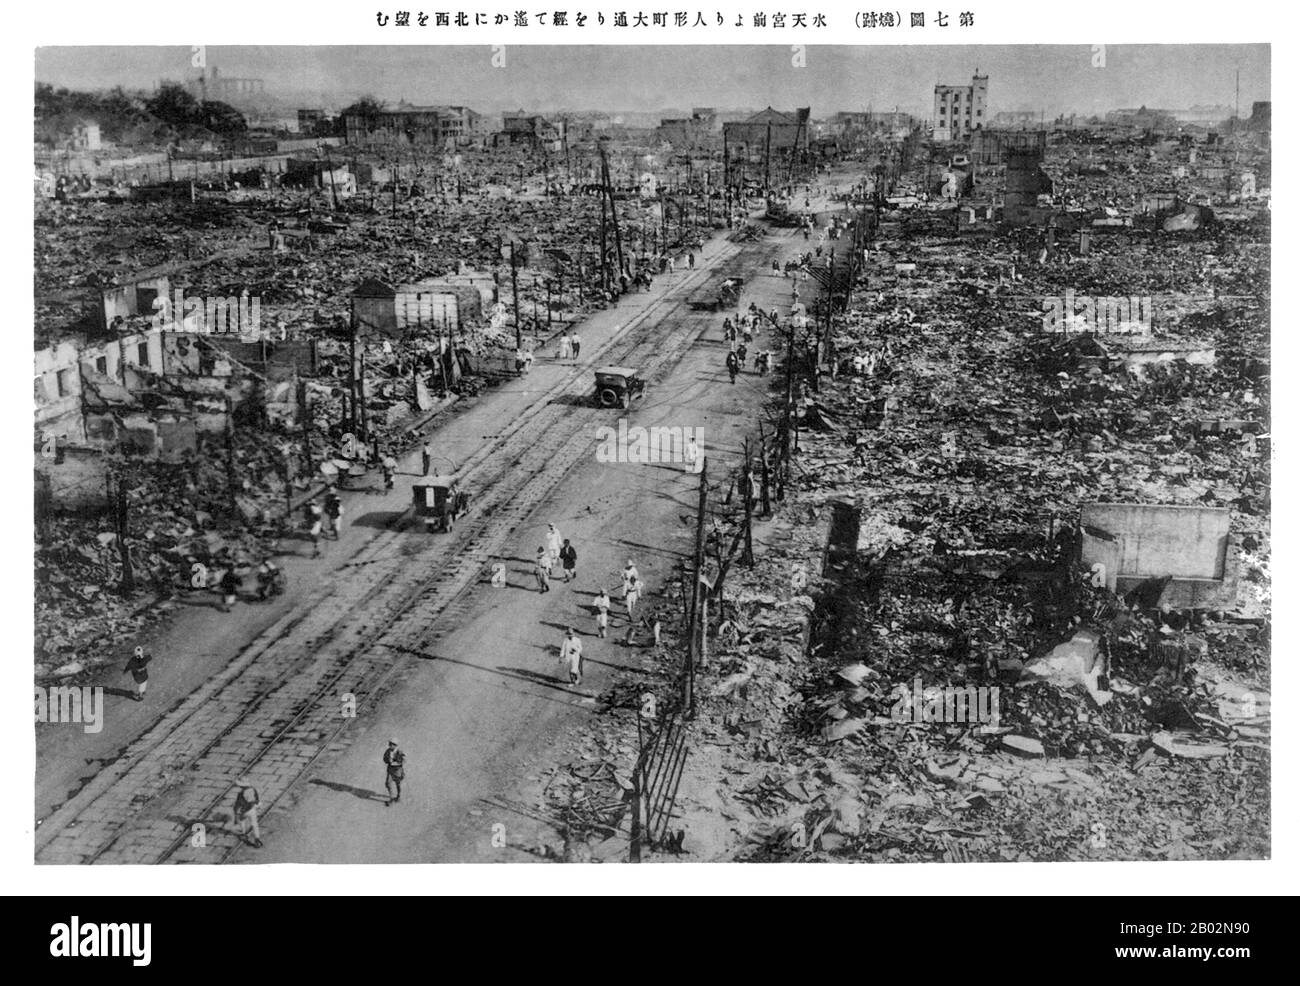 Великое землетрясение канто. Великое землетрясение Канто 1923. Землетрясение в Токио 1923. Землетрясение в Японии 1923. Землетрясение в Японии 1923 года.